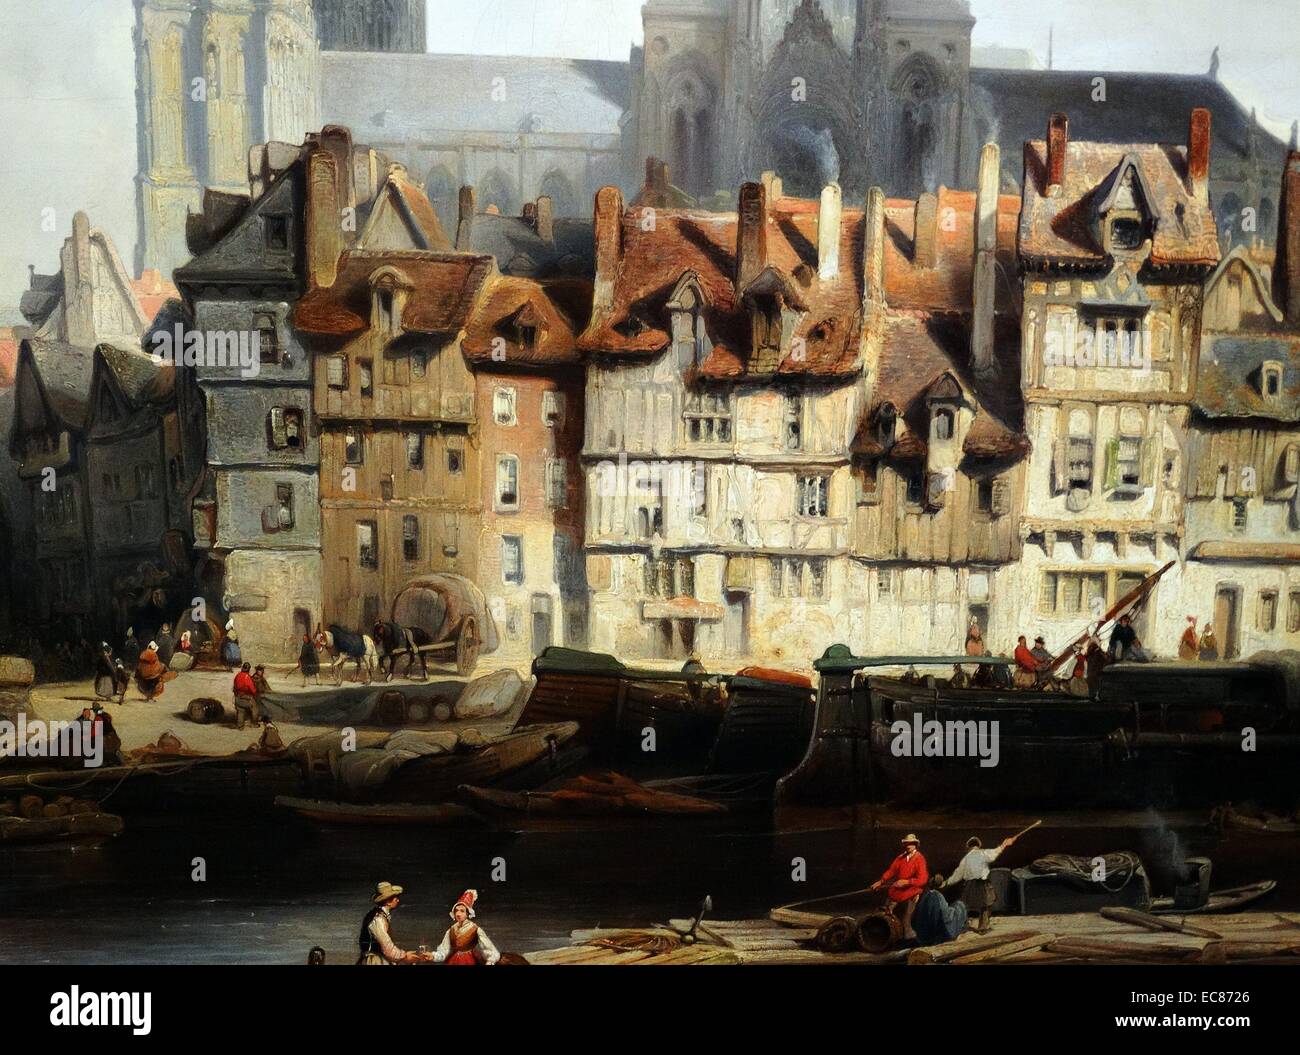 Von der Malerei Detail mit dem Titel "Die Quay de Paris in Rouen' von Johannes Bosboom (1817-1867) niederländischer Maler und Wasser - kolorist der Haager Schule gemalt. Vom 1839 Stockfoto